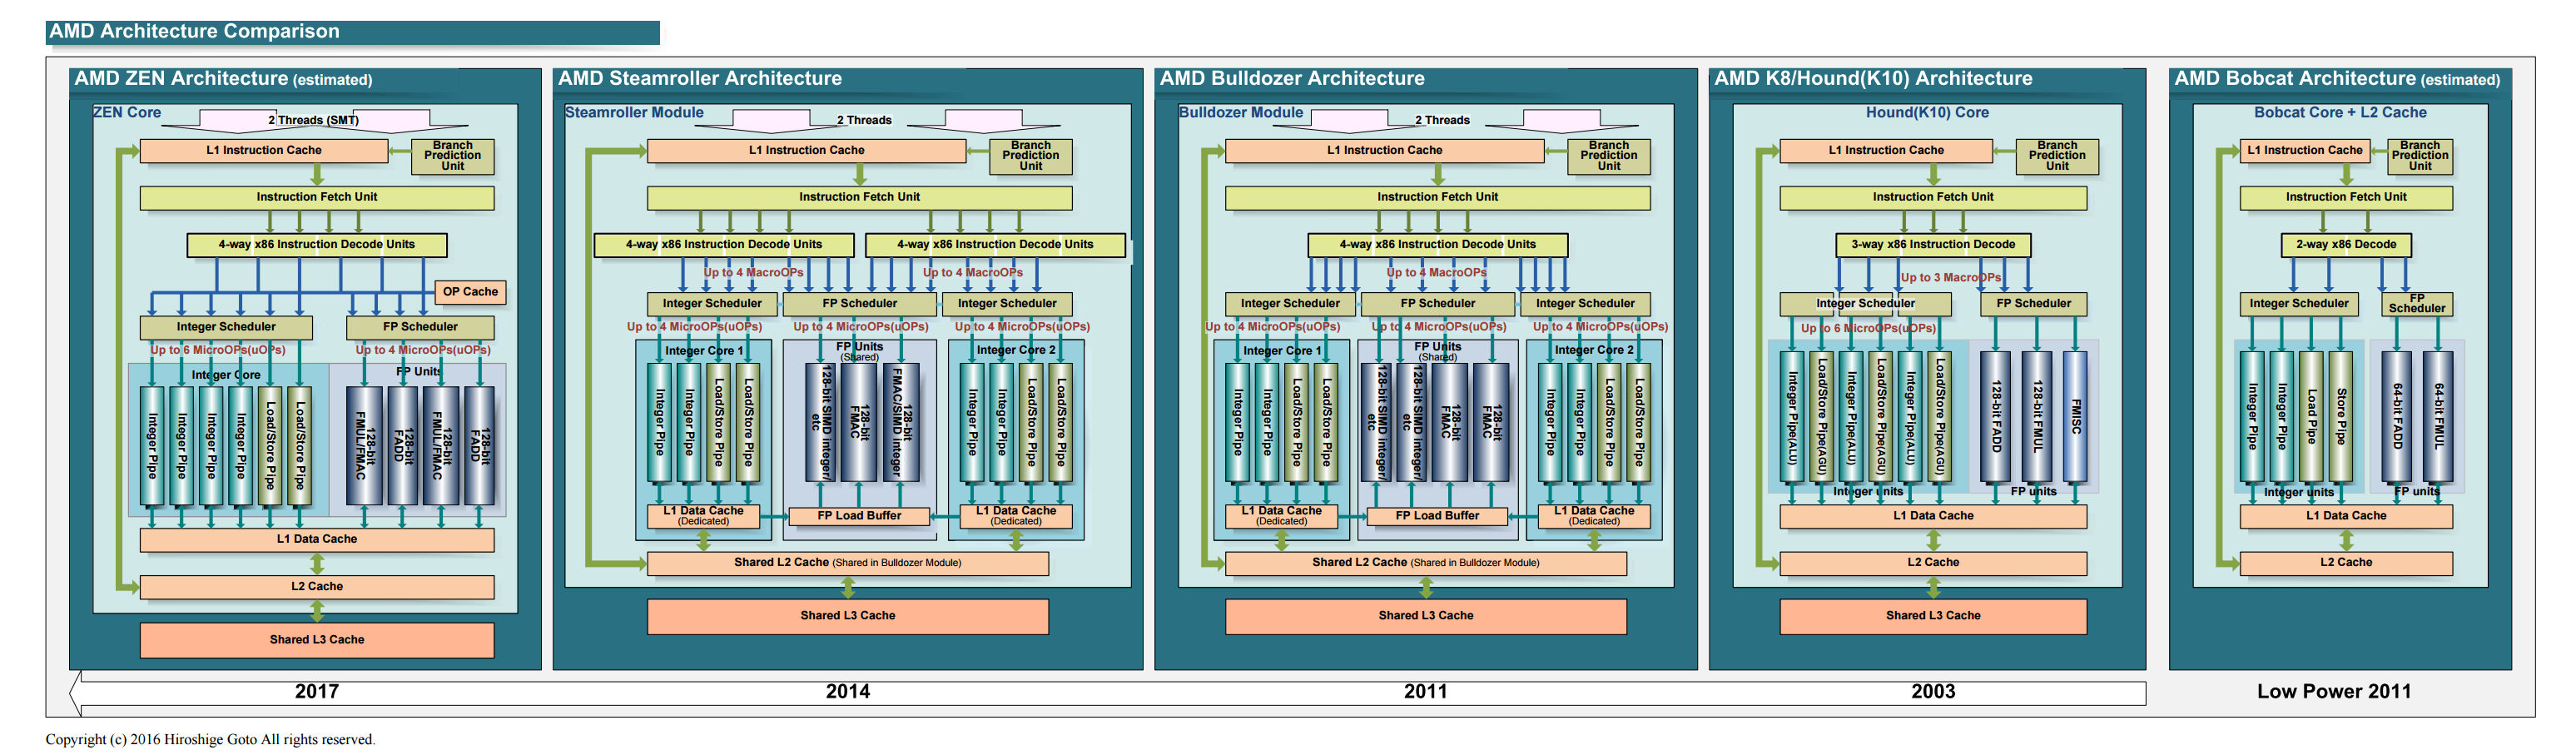 AMD-architectures.jpg